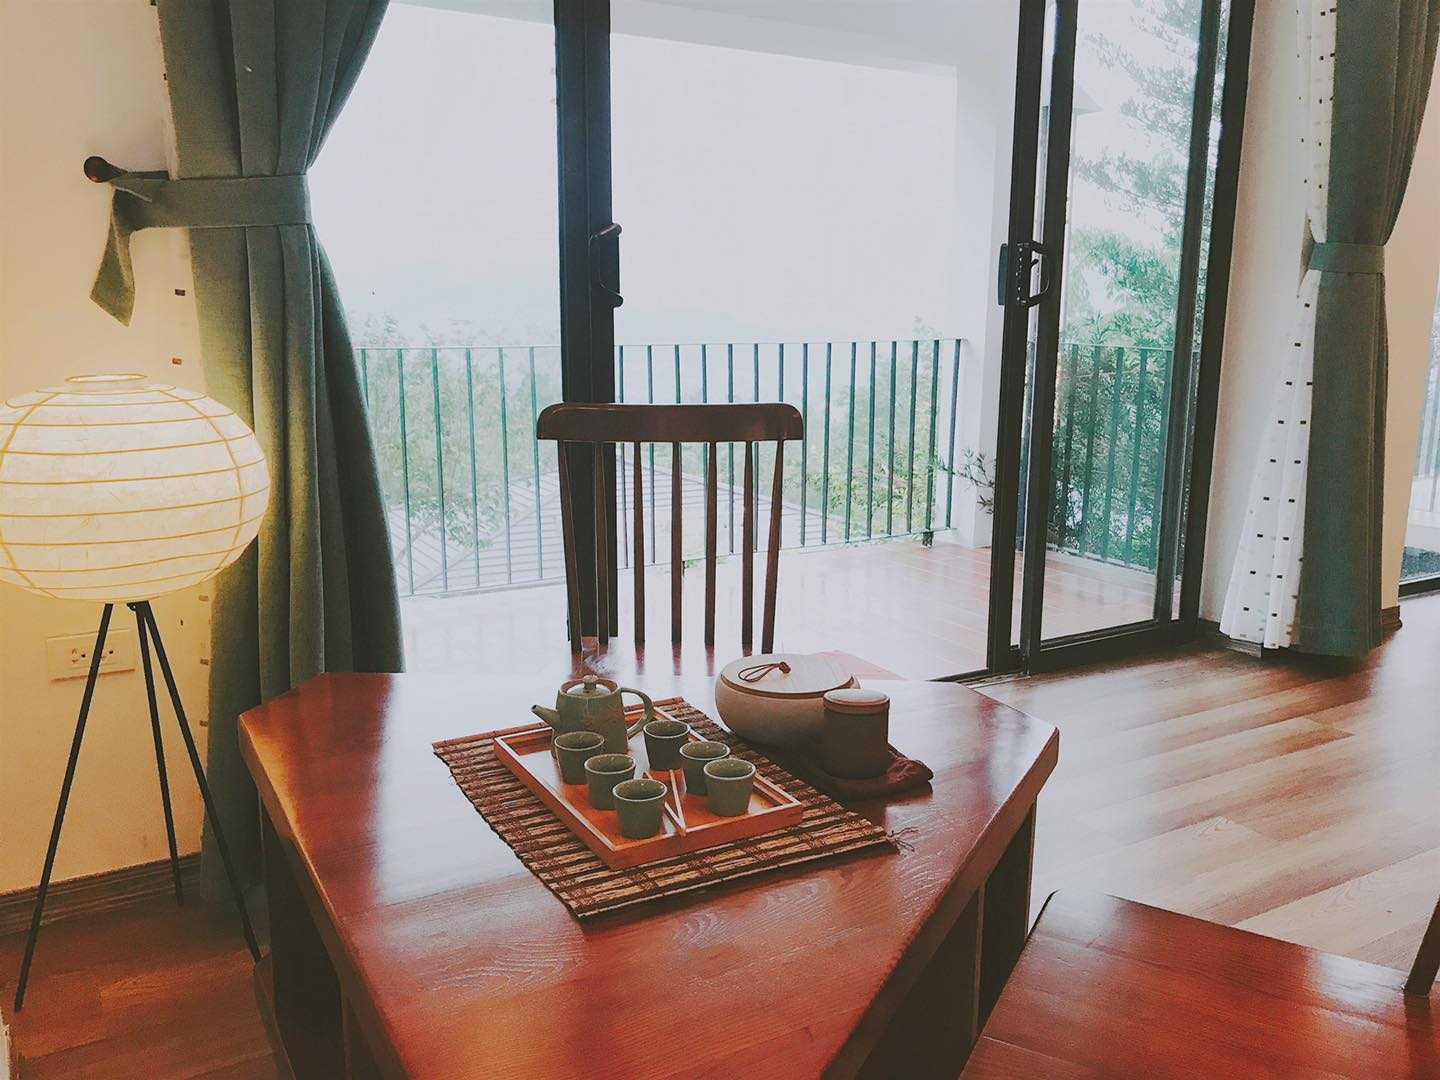 Onsen Villa Hoà Bình - Phiên bản thu nhỏ hoàn hảo xứ sở "Mặt Trời Mọc"